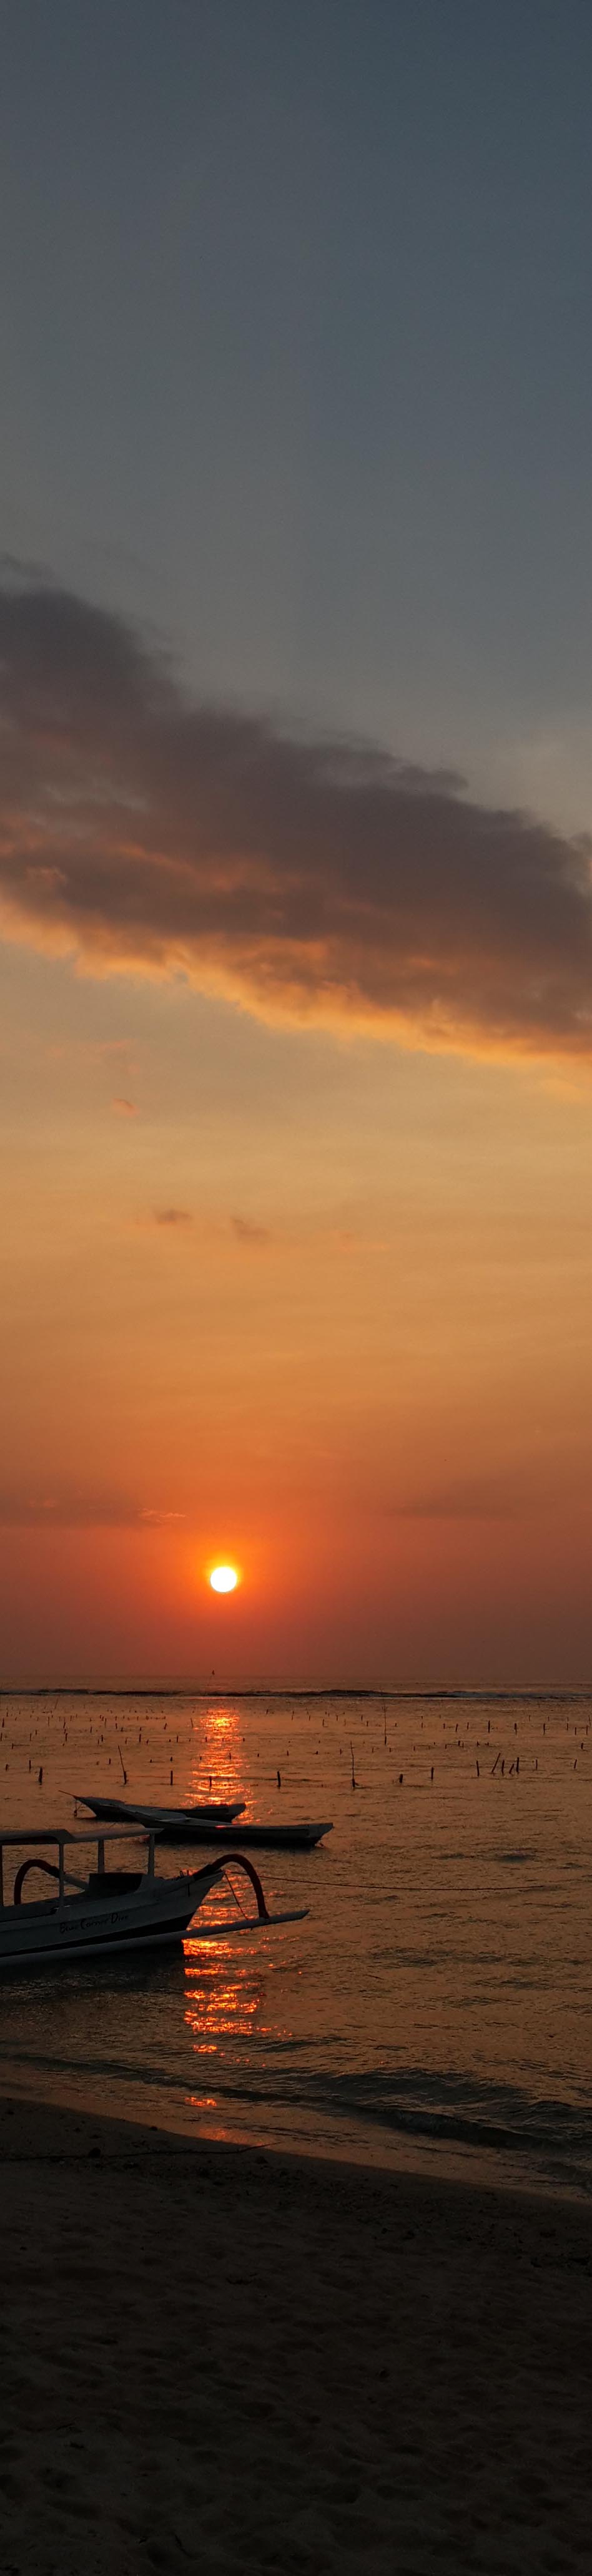 vertical sunset.jpg